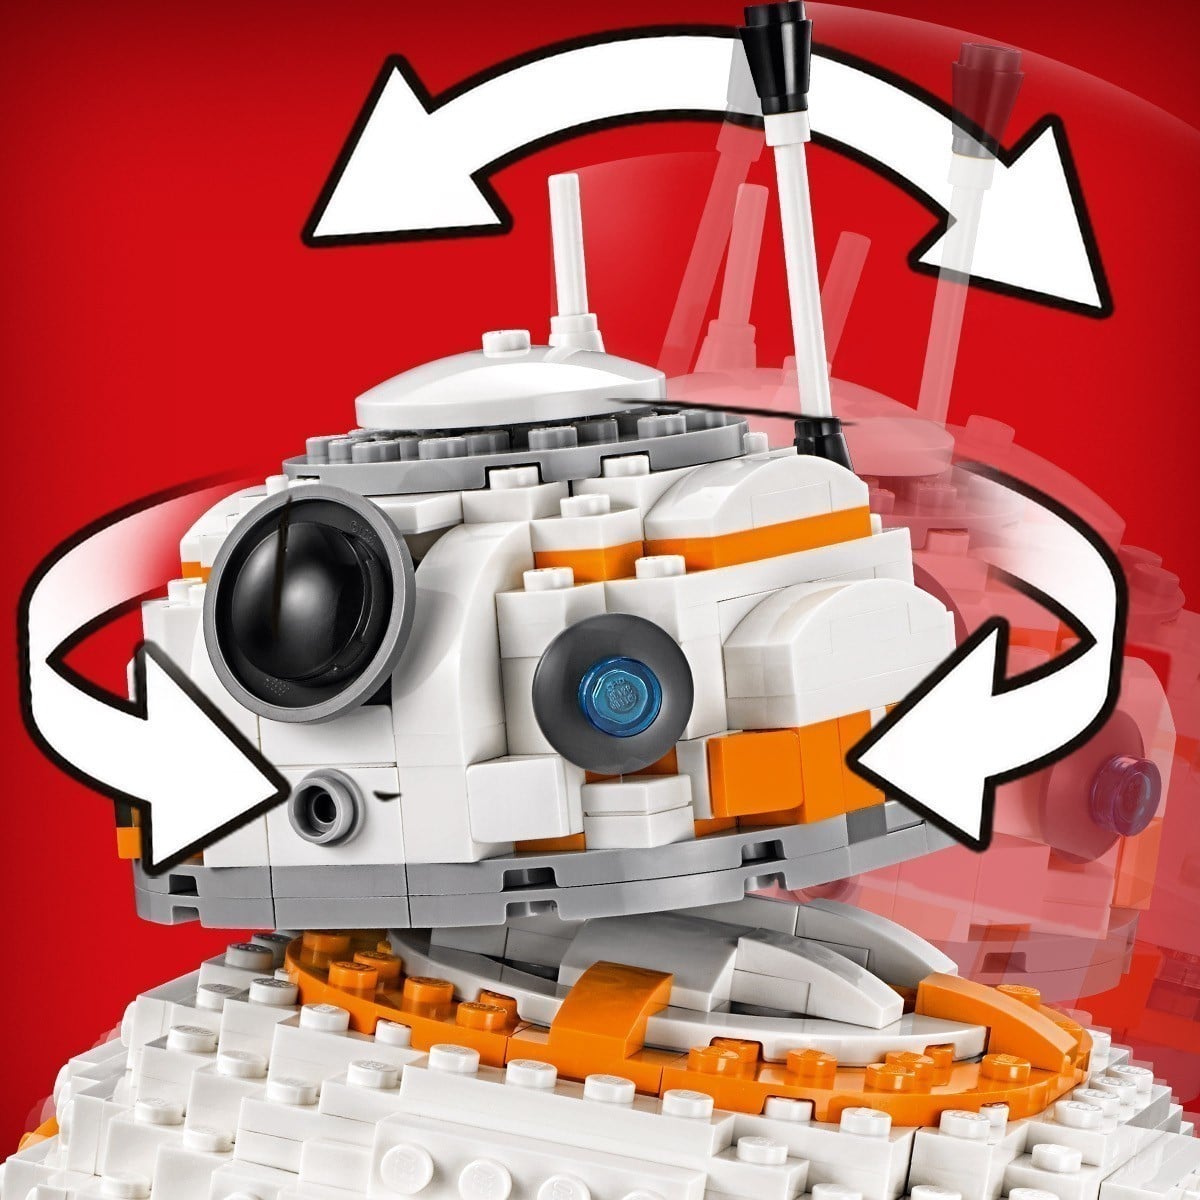 LEGO® - Star Wars™ - 75187 BB-8™